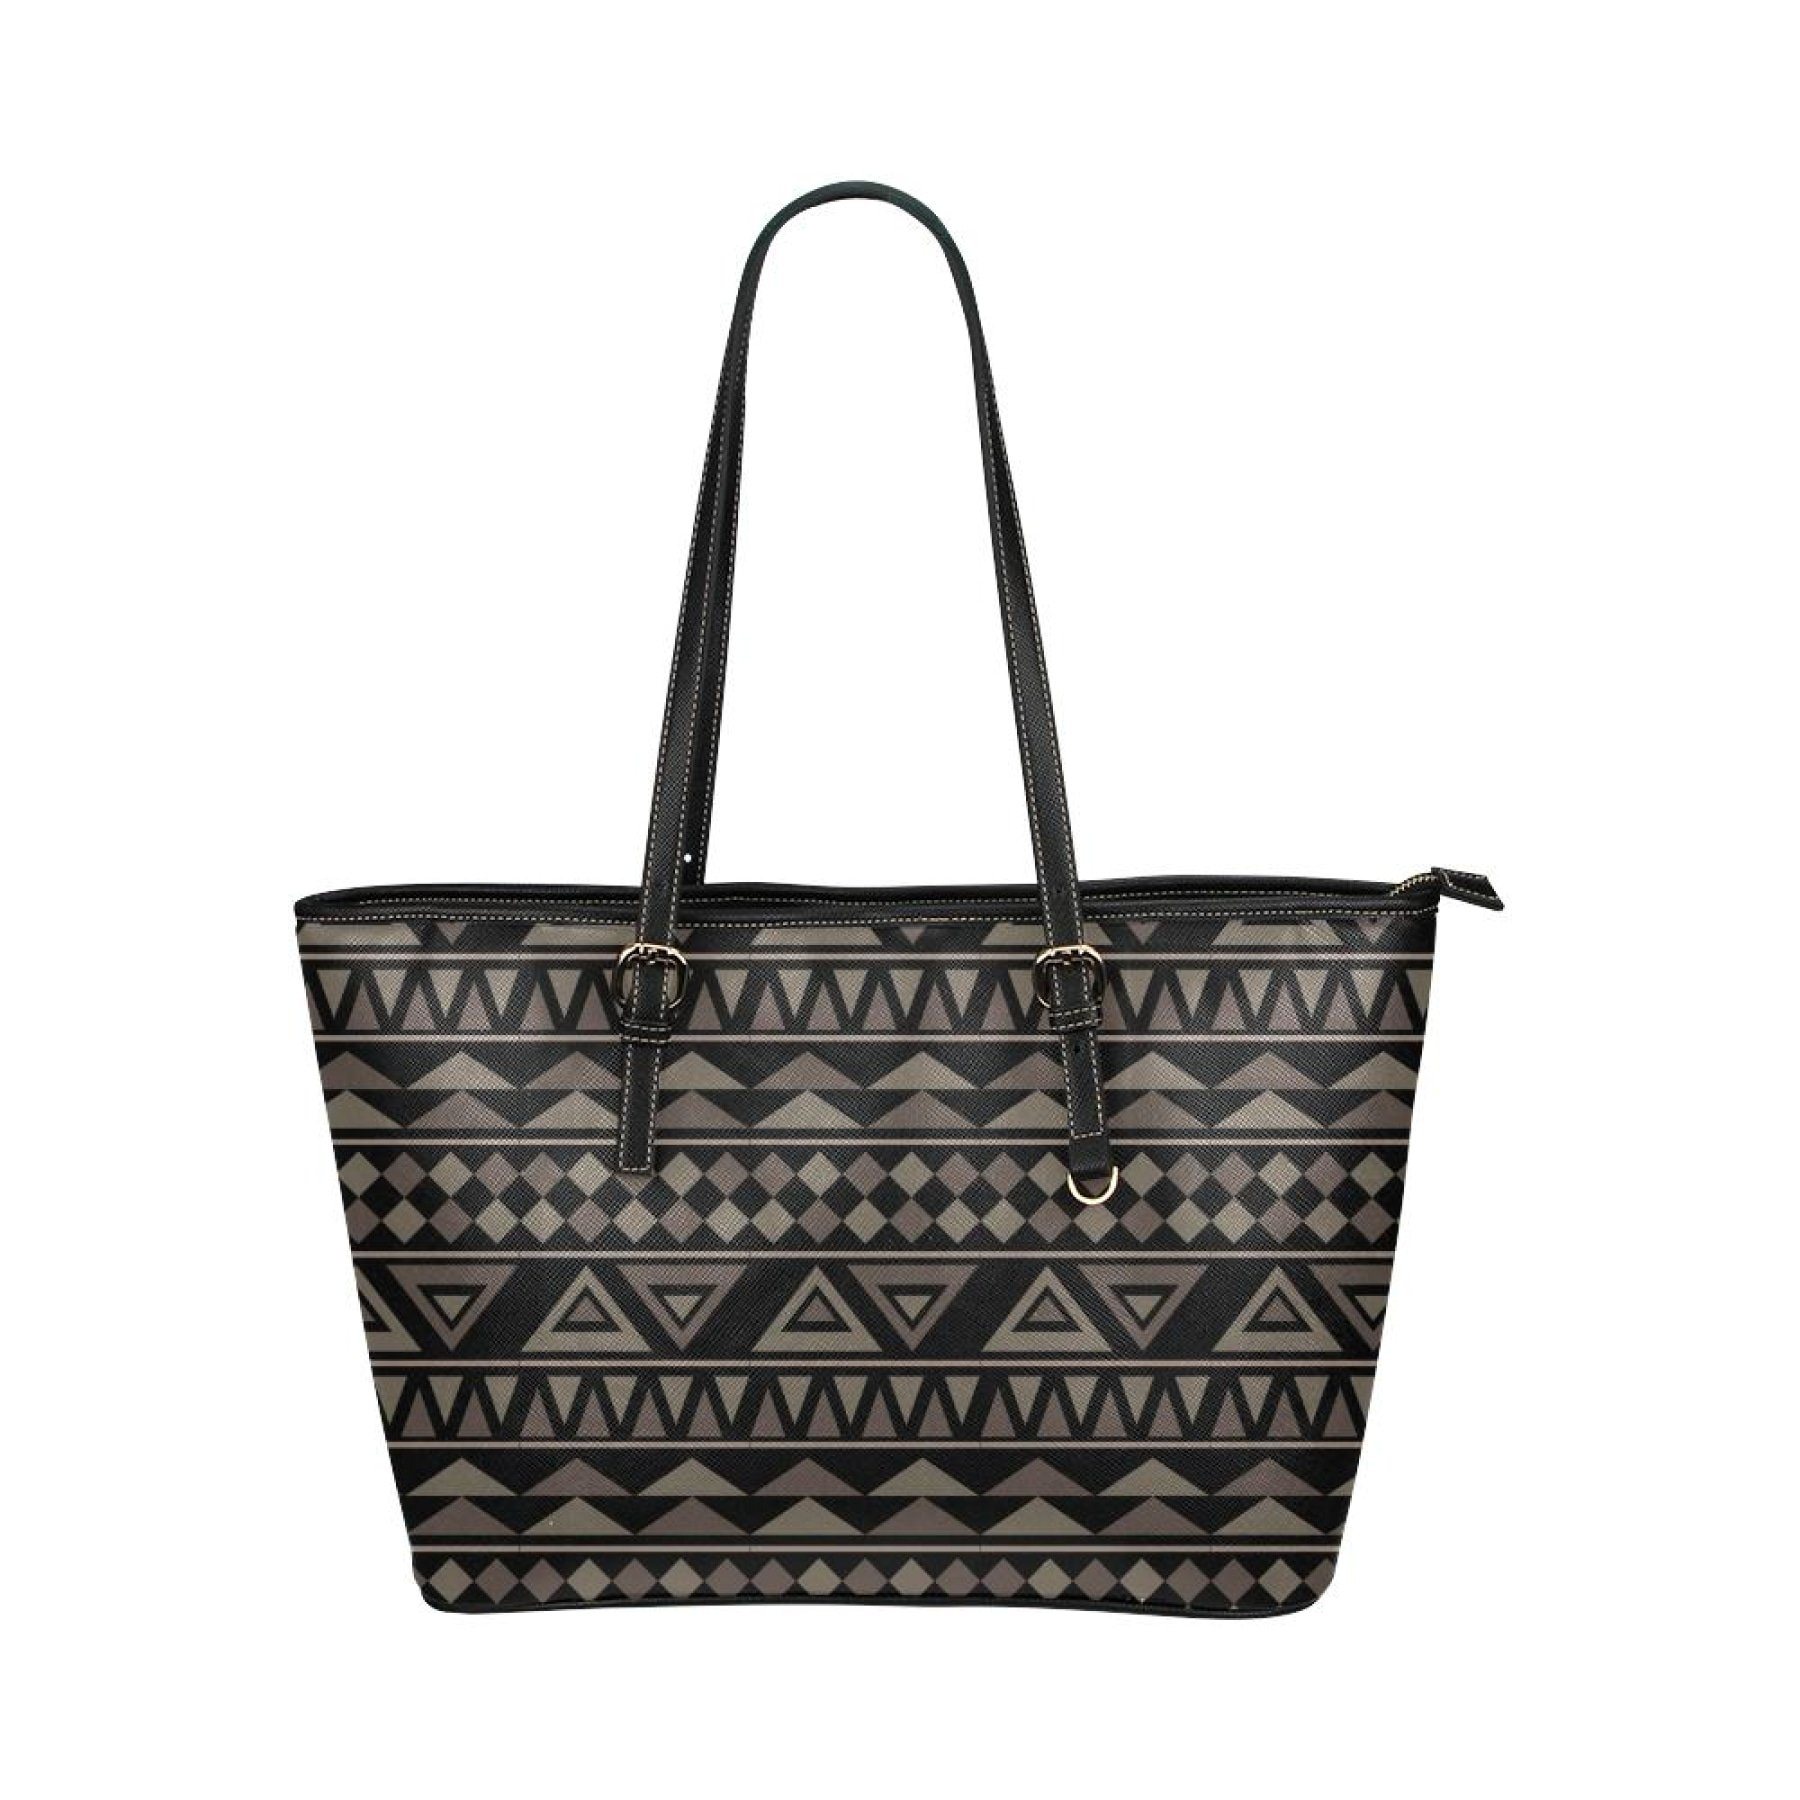 Black Tote Shoulder Bag With Aztec Design 22